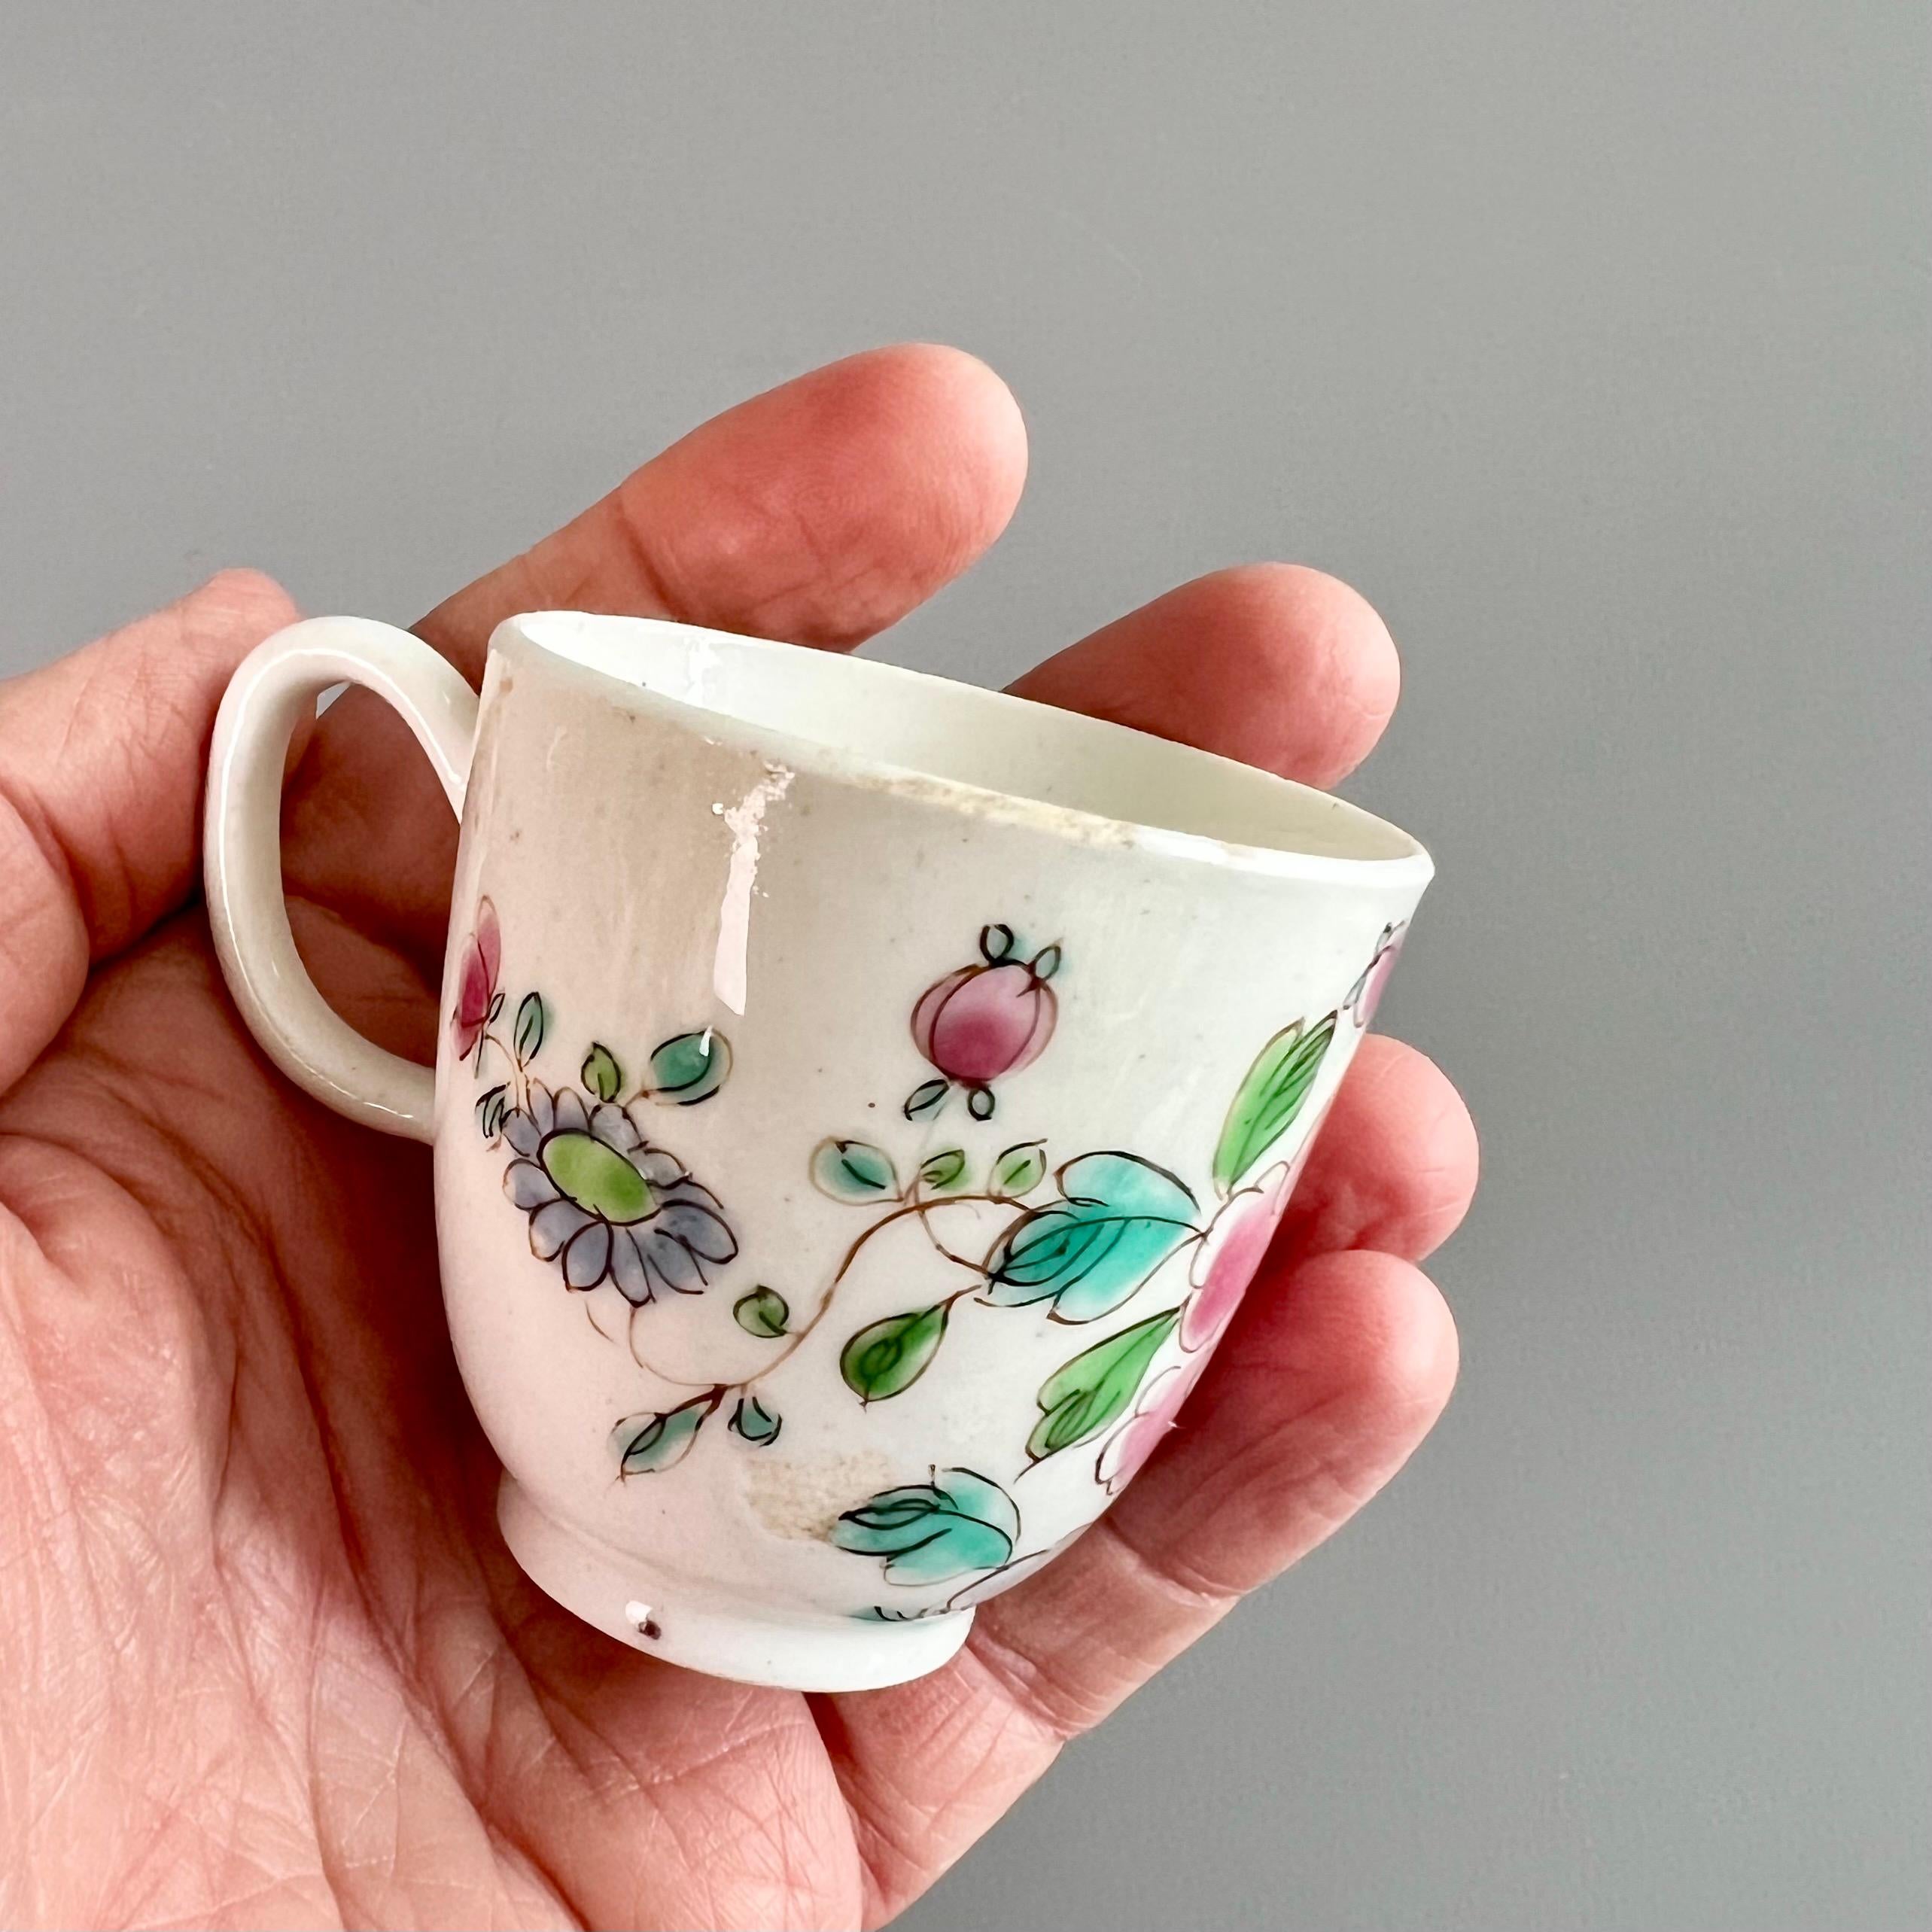 Il s'agit d'une très charmante tasse à café orpheline fabriquée par la manufacture de porcelaine Bow vers 1755. La tasse est décorée d'un motif de pivoine de la 